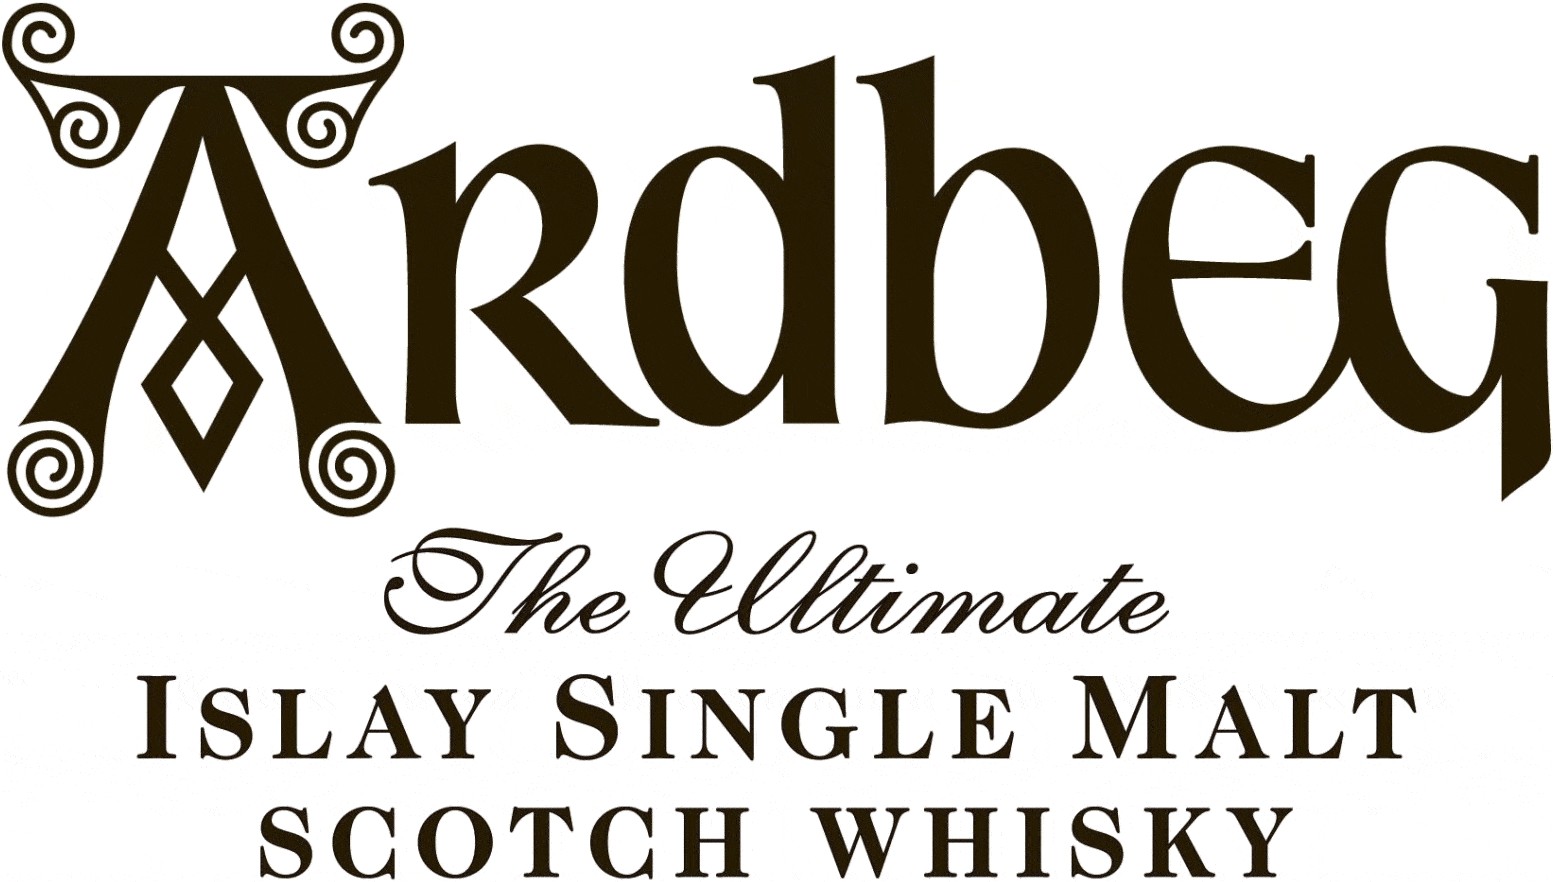 Whisky Ardbeg